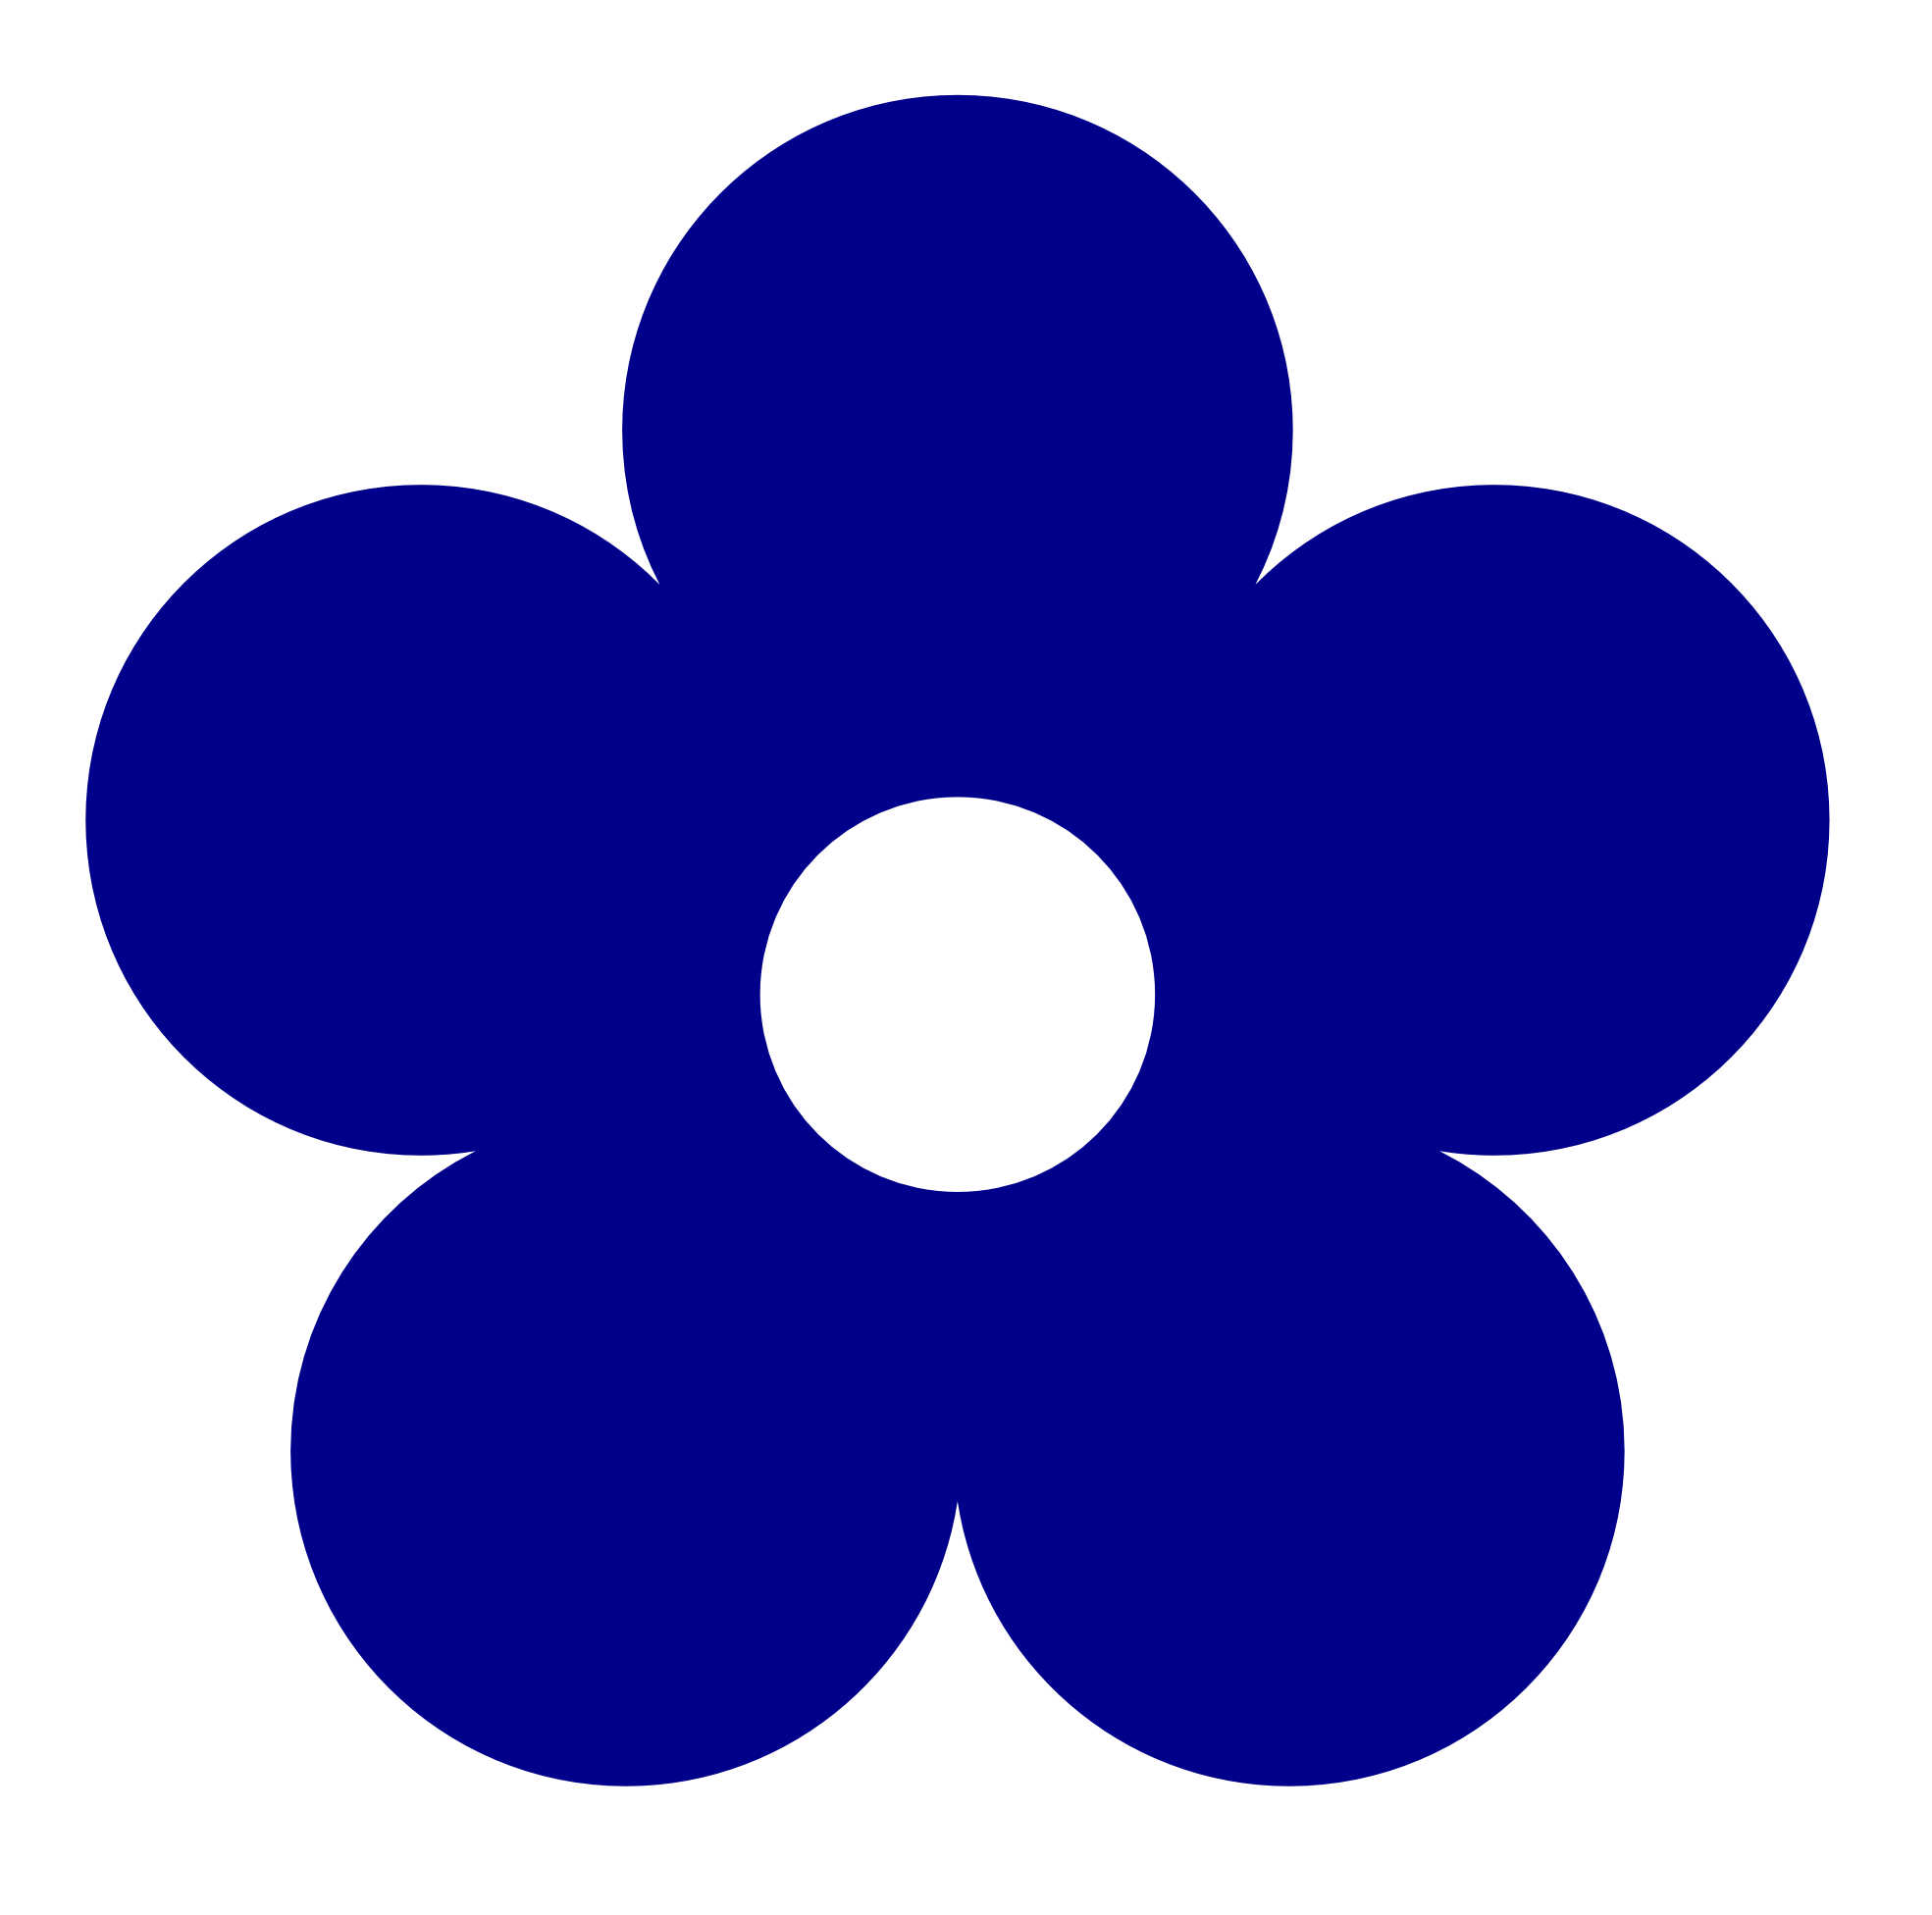 Flowers For > Navy Blue Flowers Clip Art